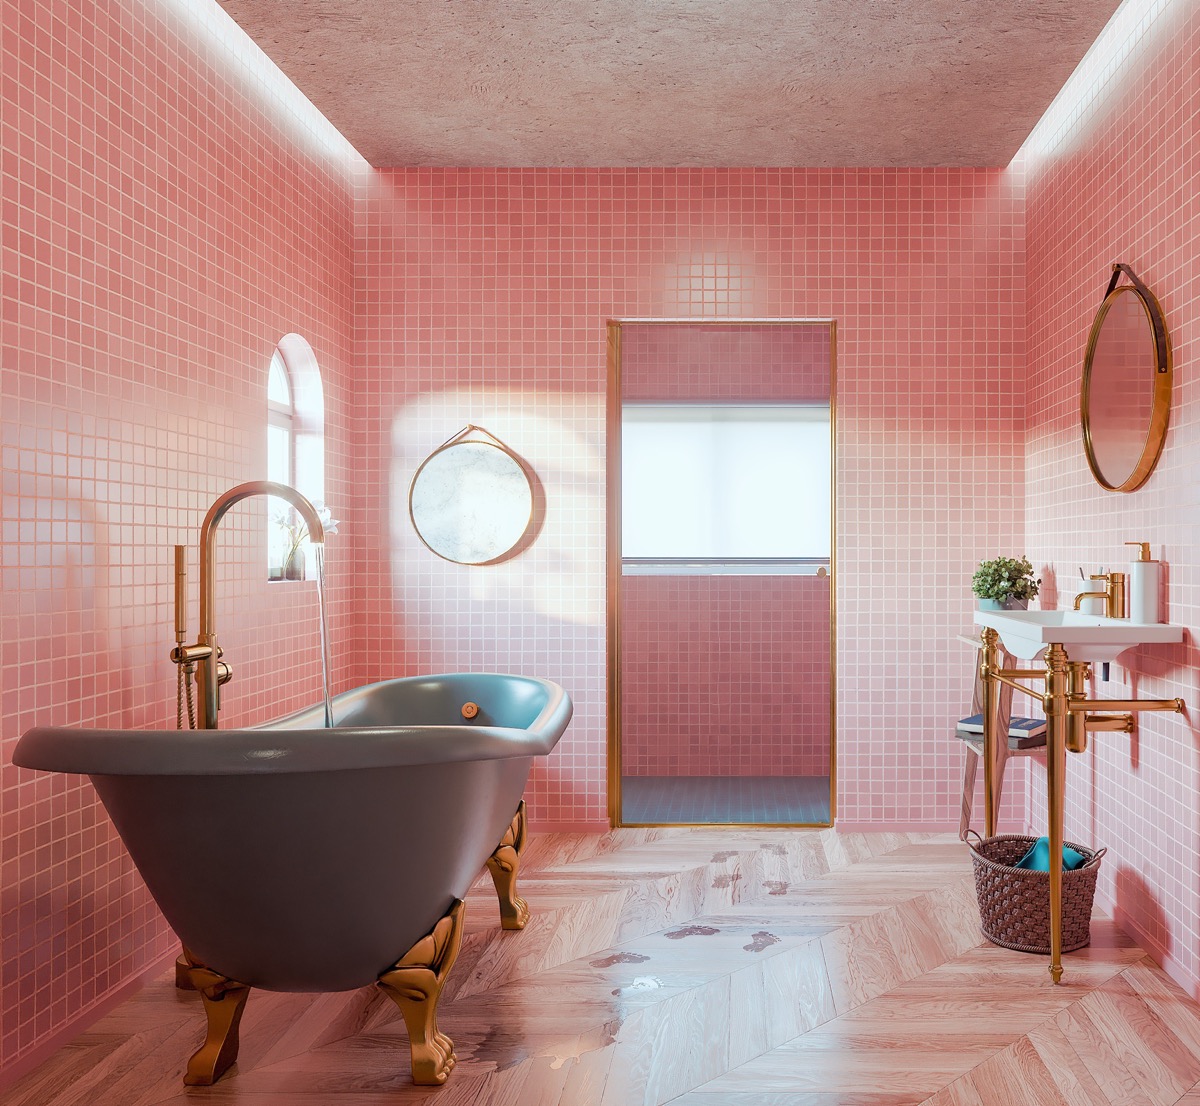 Phòng tắm cổ điển với sự kết hợp của gam màu hồng chủ đạo và màu xám từ bồn tắm nằm làm điểm nhấn. Ngoài ra, những chi tiết kim loại mạ vàng trên bồn rửa, viền khung gương, chân đế bồn tắm, cửa ra vào,... tạo nên cái nhìn lấp lánh và sang chảnh.